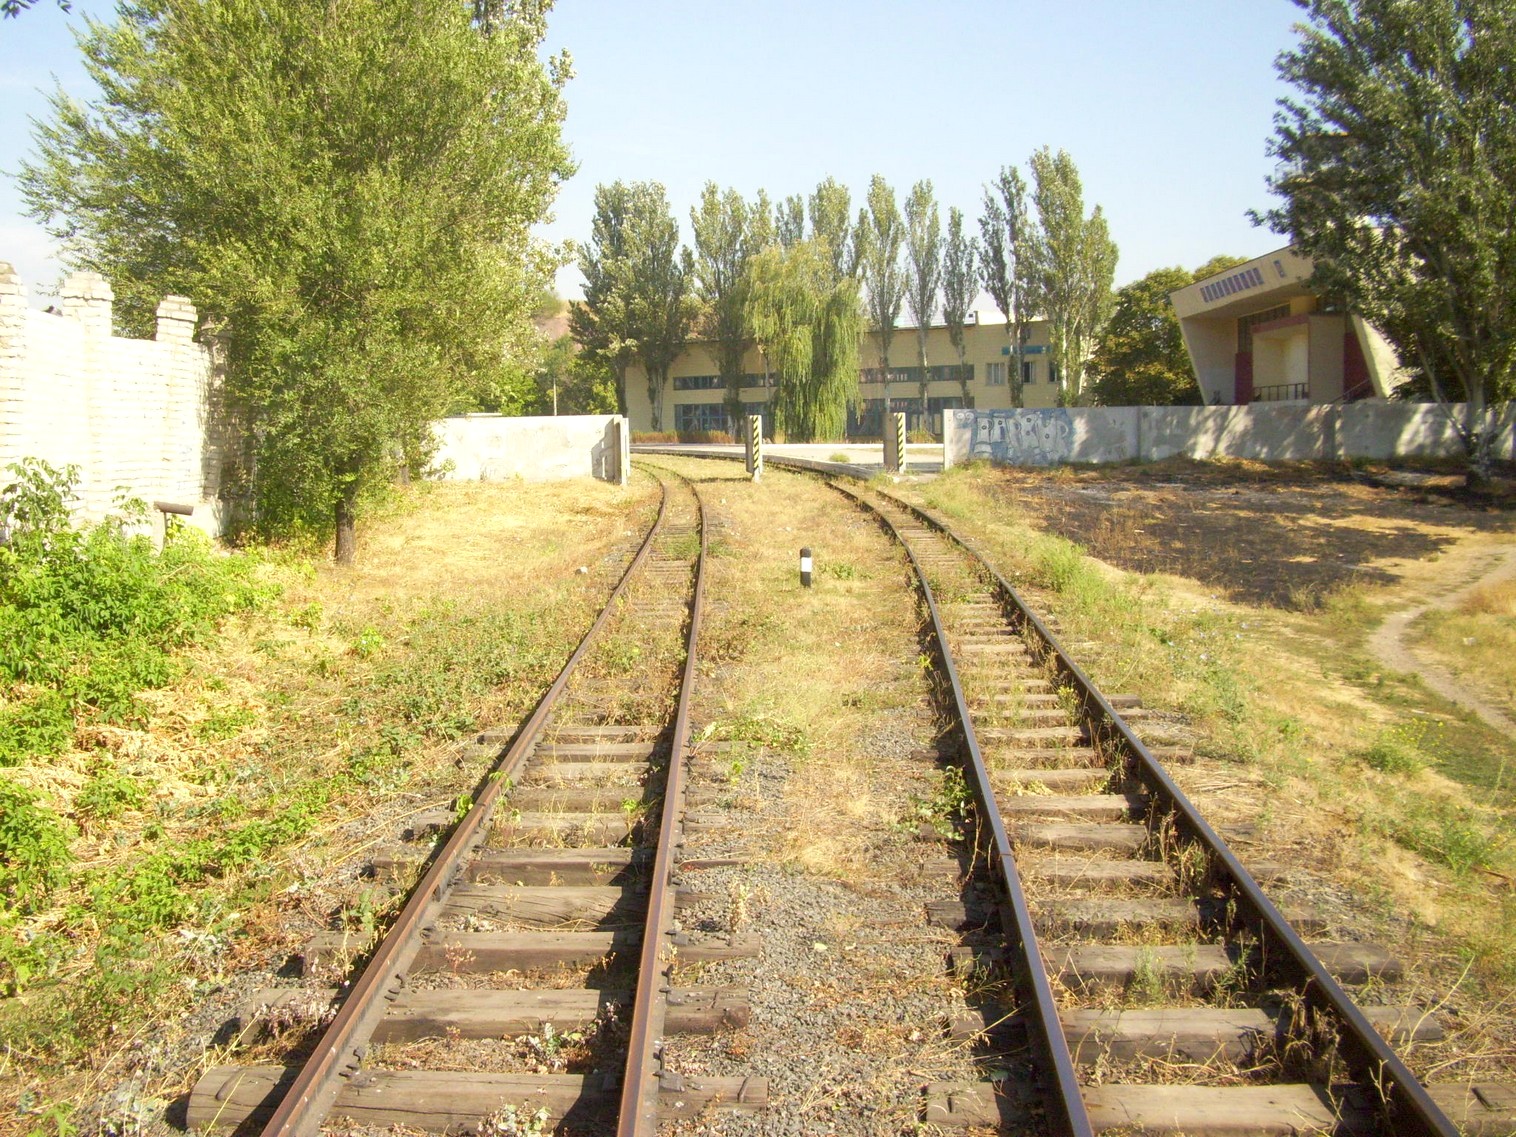 Донецкая детская железная дорога  —  фотографии, сделанные в 2010 году (часть 4)